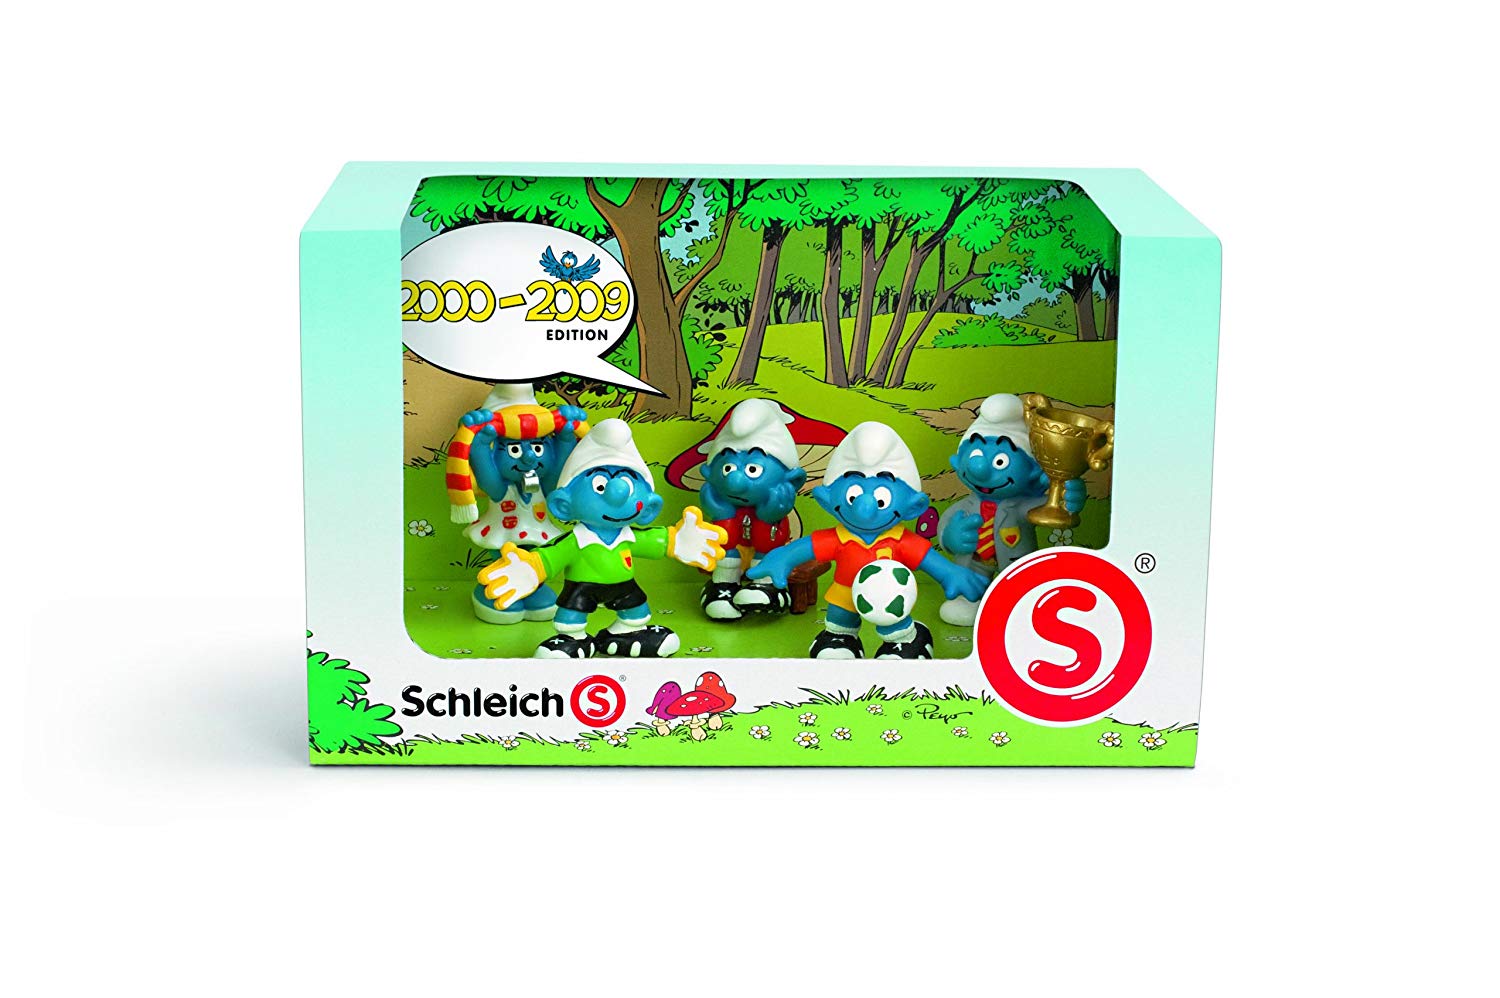 Schleich Smurf Set 2000-2009